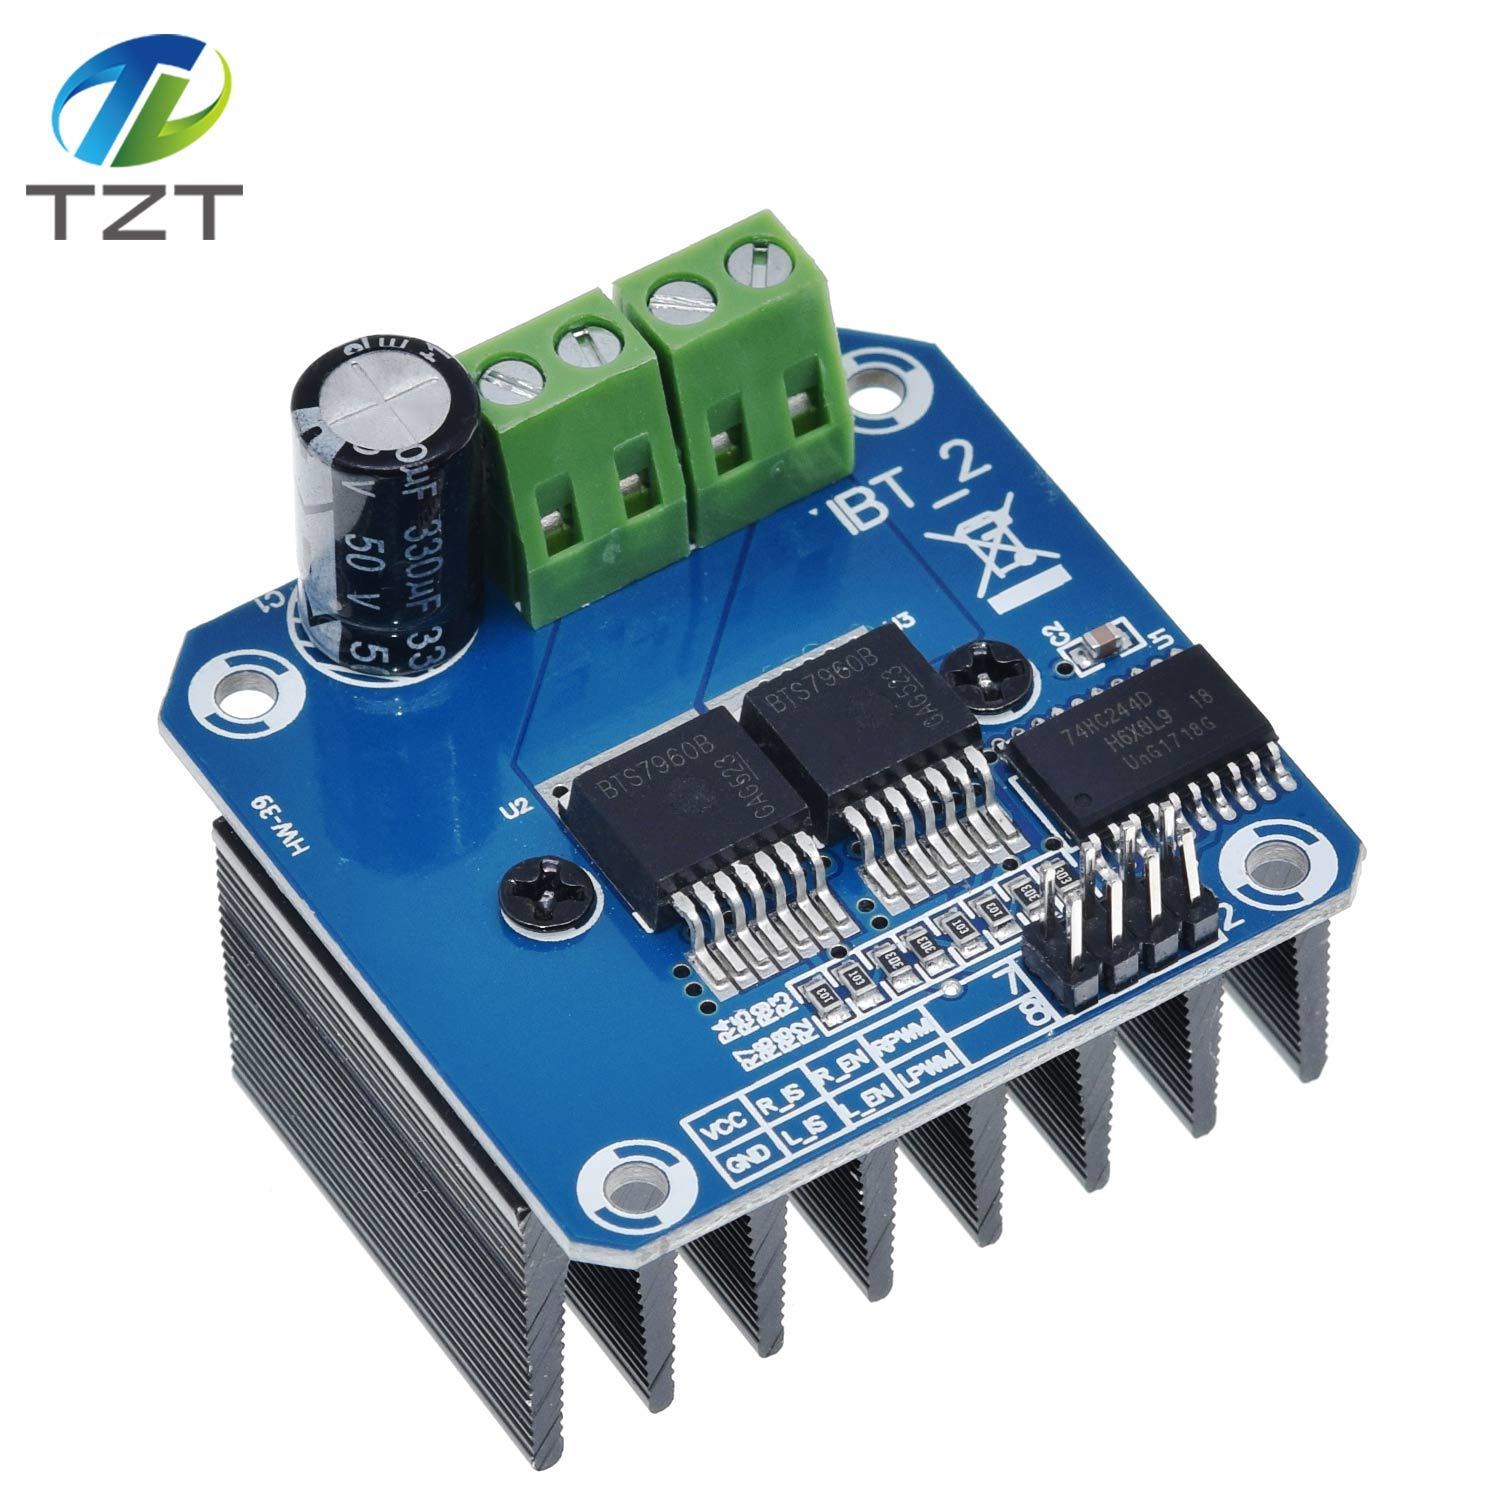 TZT Double BTS7960 43A H-bridge High-power Motor Driver module/ diy smart car Current diagnostic for Arduino